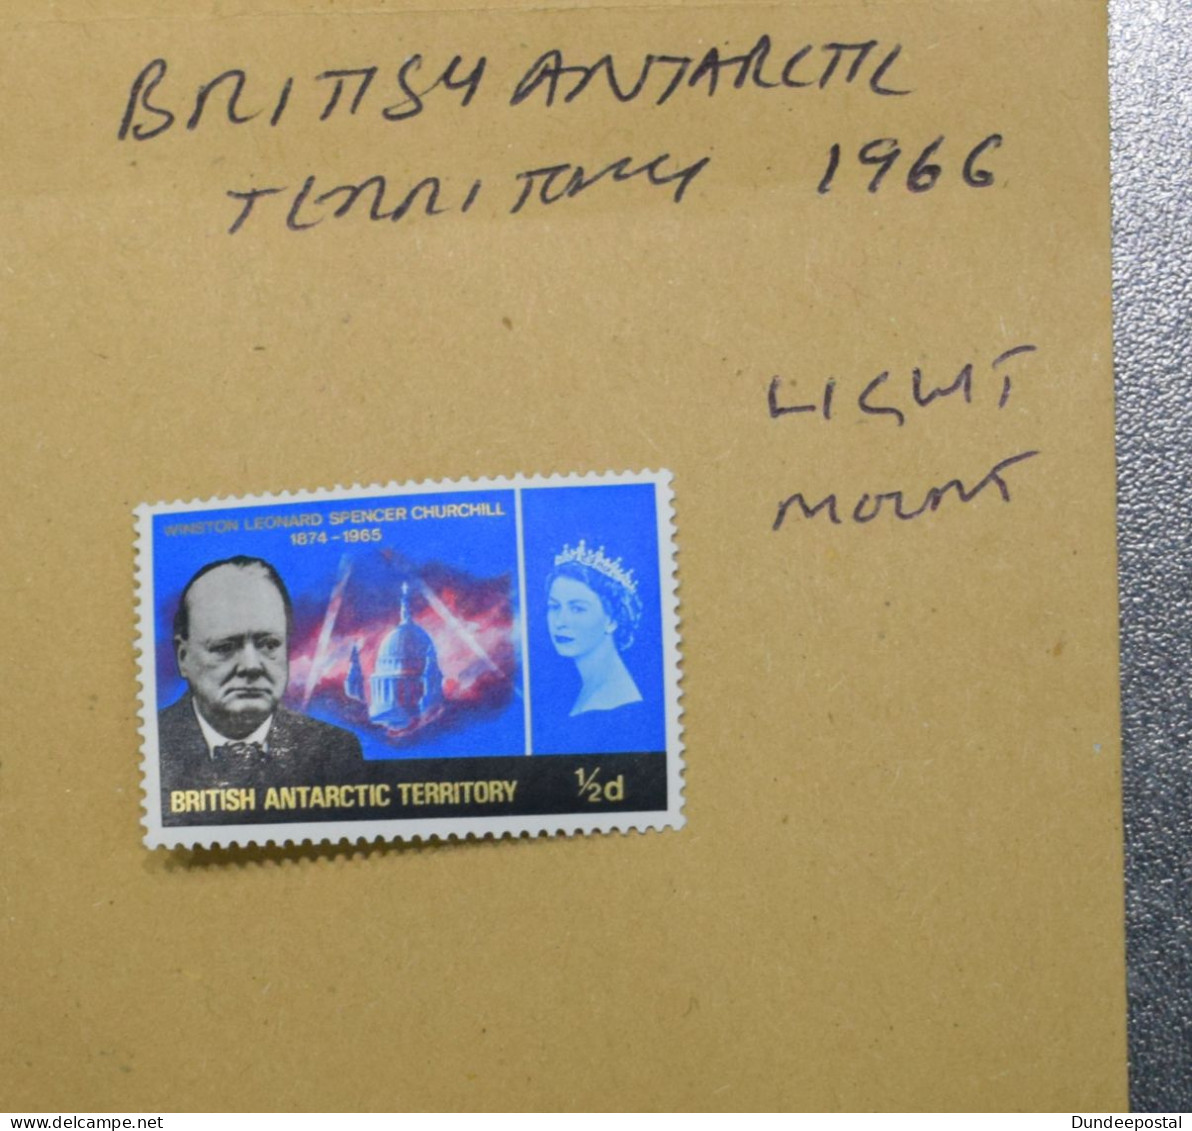 BRITISH ANTARCTIC STAMPS  Coms Light Mount 1966  ~~L@@K~~ - Ongebruikt